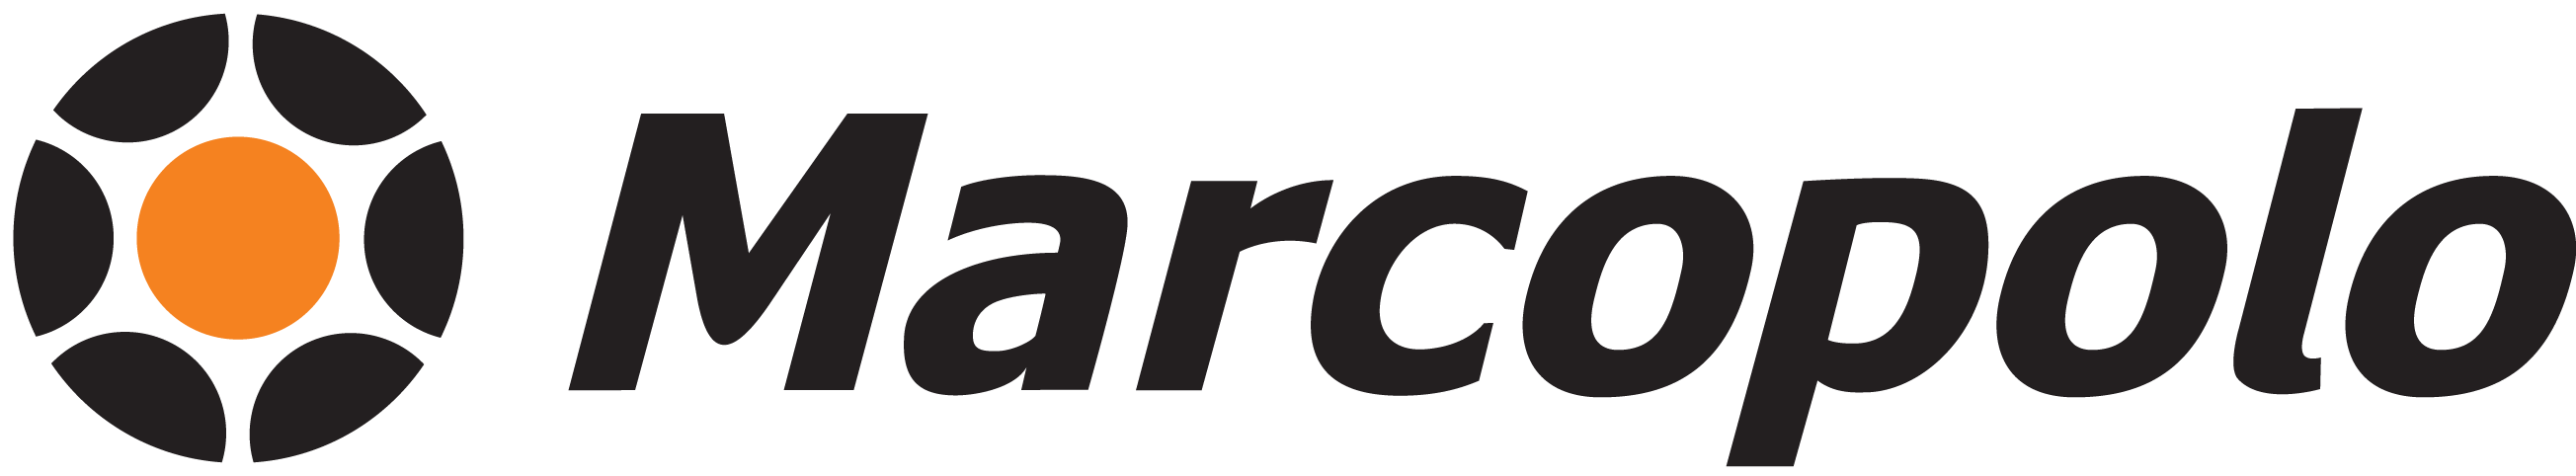 Marcopolo Logo - Marcopolo | Logos